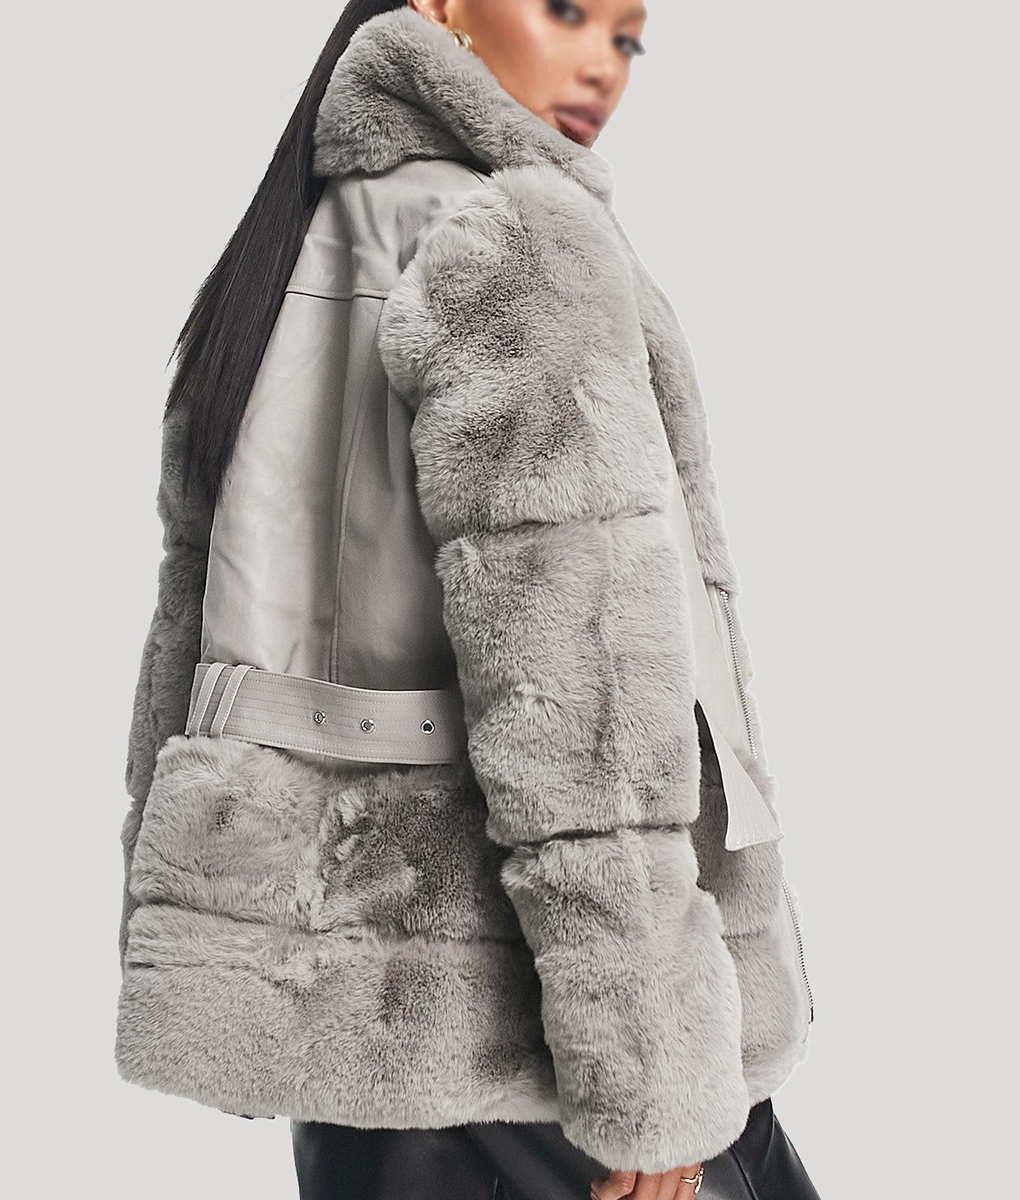 Chanel Cresswell The Gentlemen Fur Jacket (6)